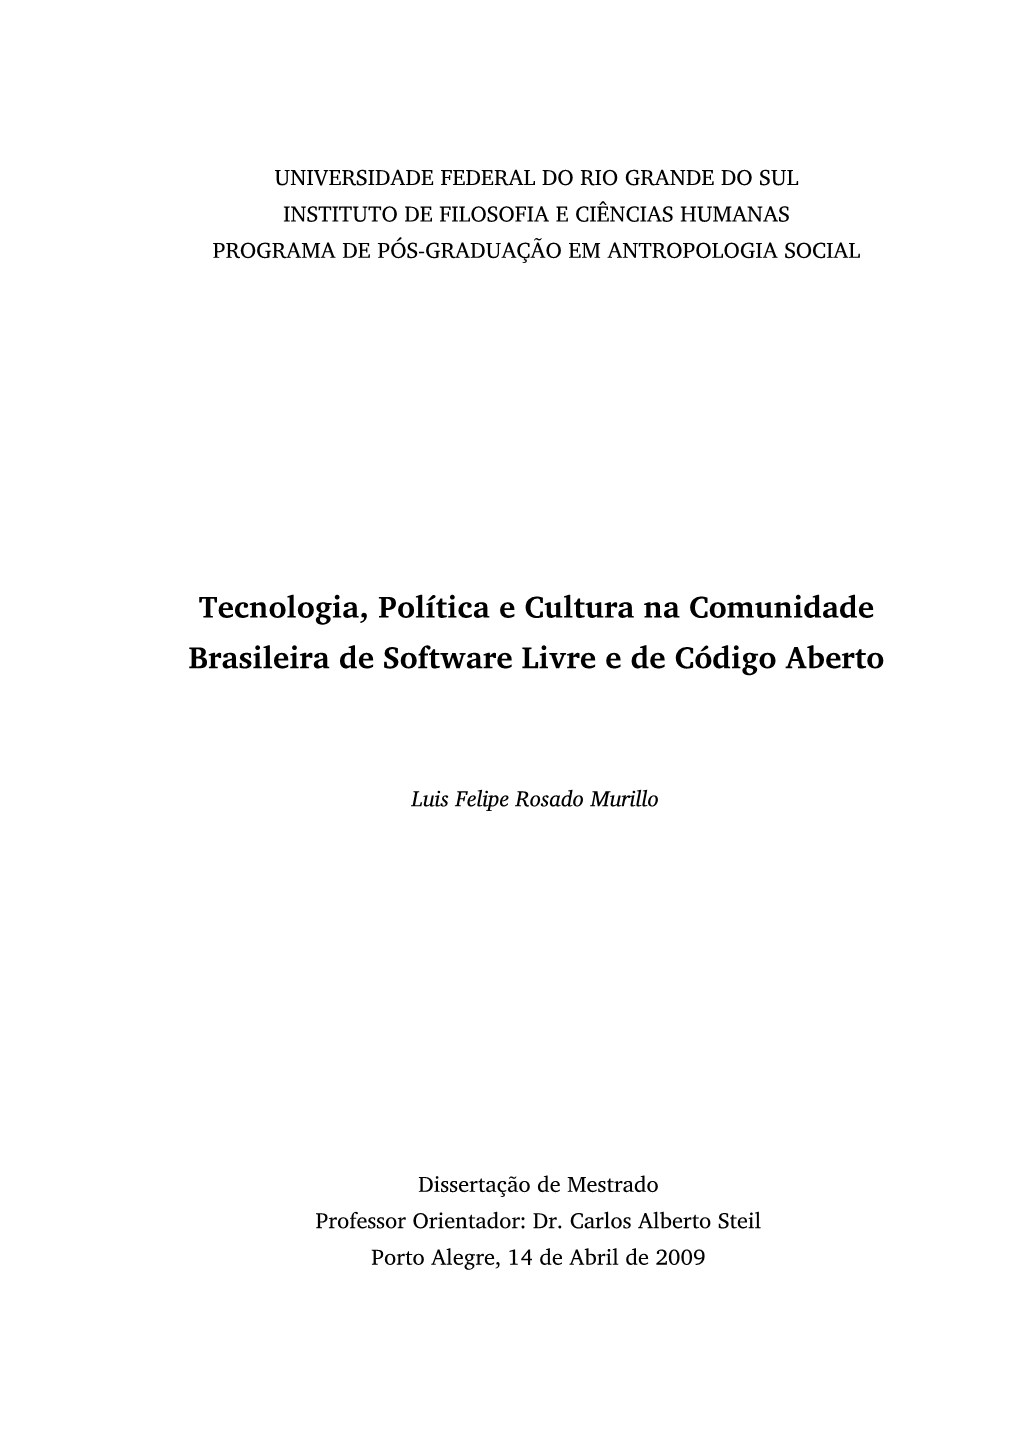 Tecnologia, Política E Cultura Na Comunidade Brasileira De Software Livre E De Código Aberto